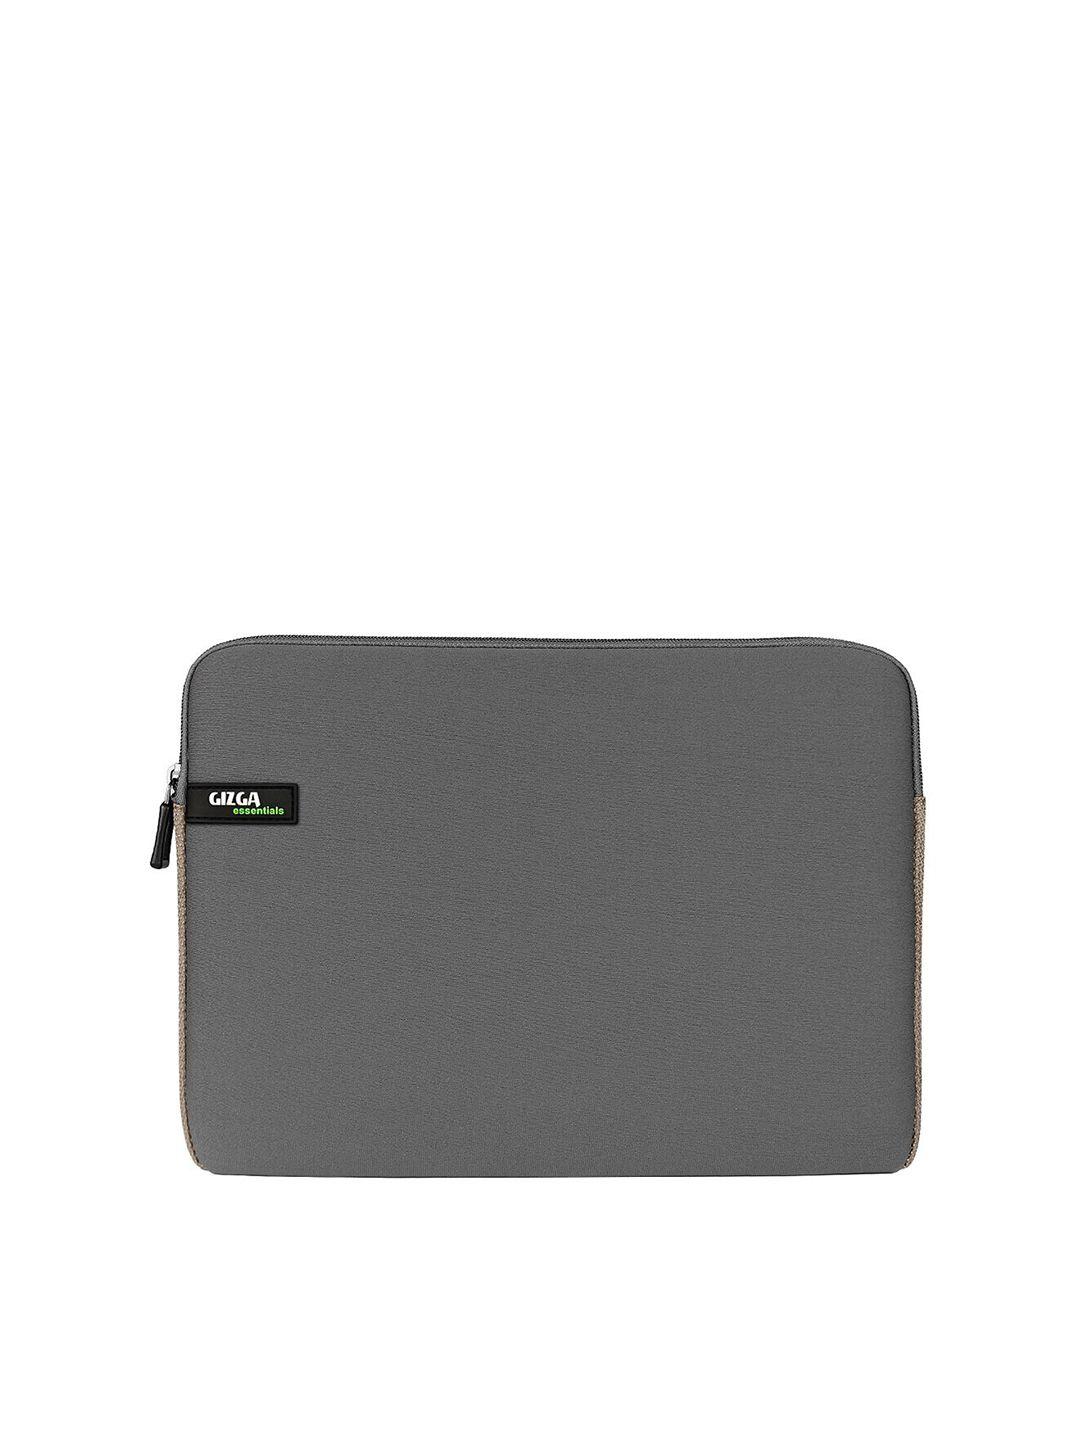 gizga essentials unisex grey laptop sleeve